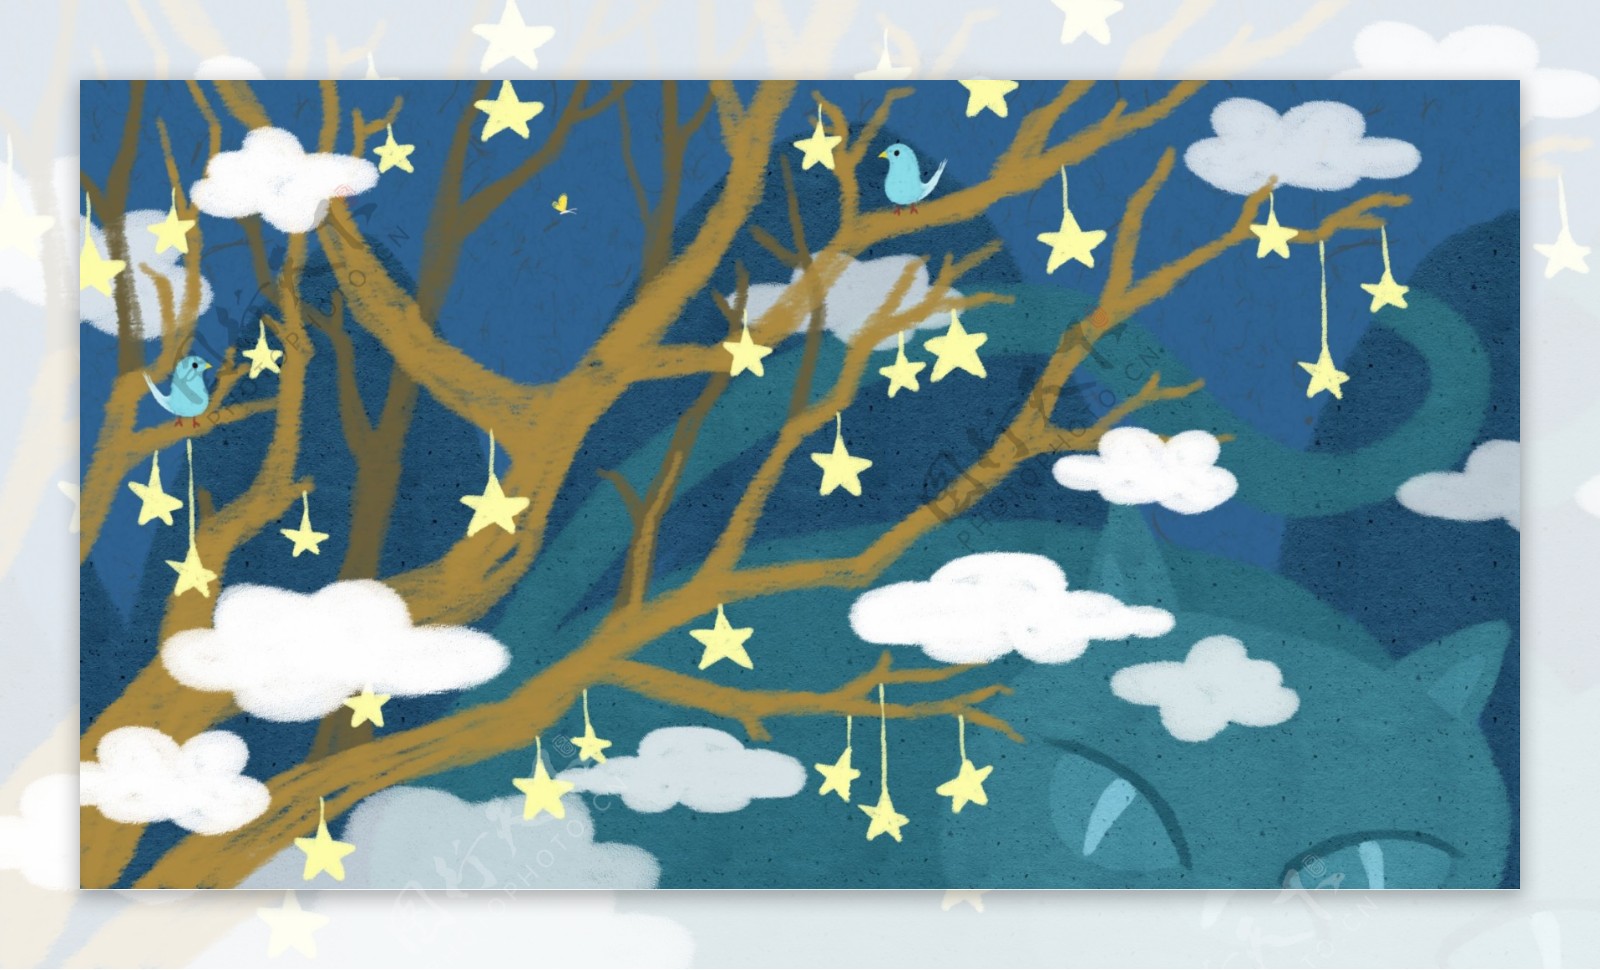 大树枝杆上挂着的星星蓝天背景